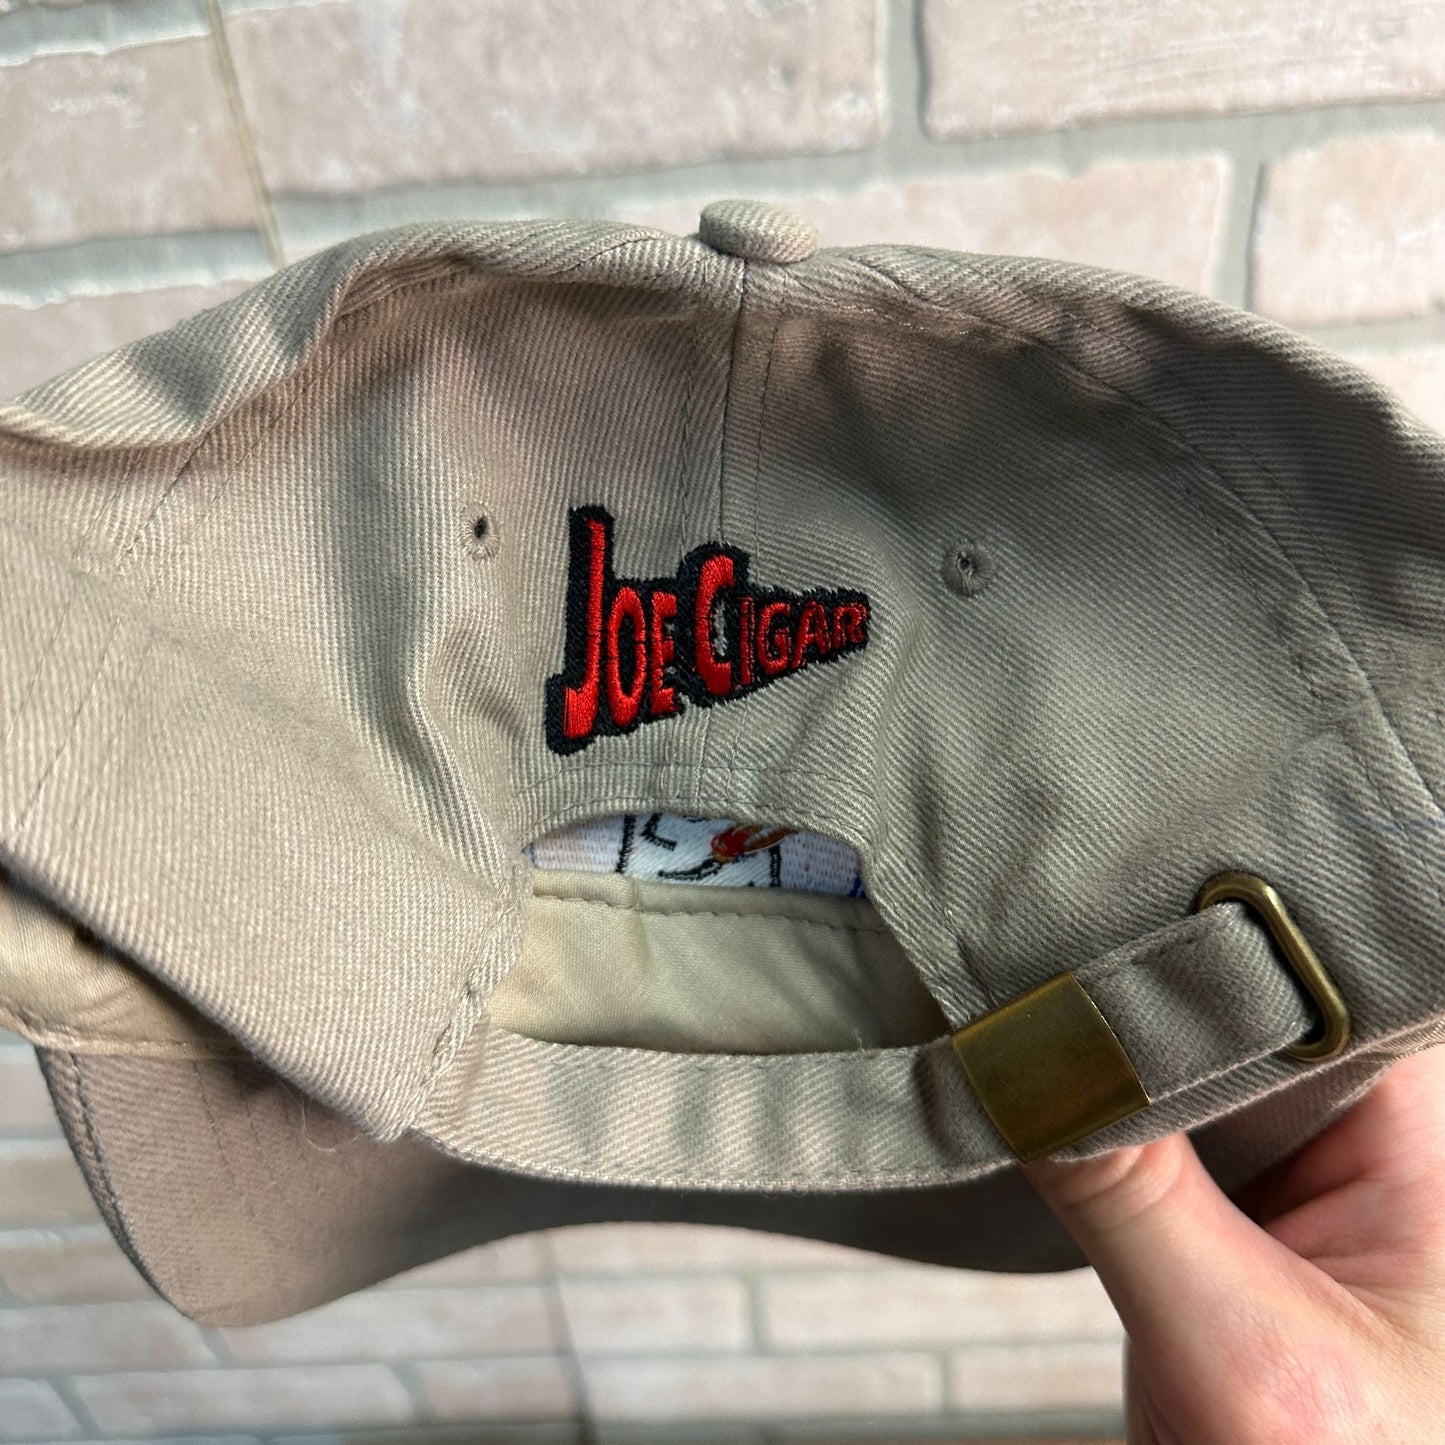 JOE CIGAR CIGARETTES RETRO TAN GRAY BASEBALL CAP HAT